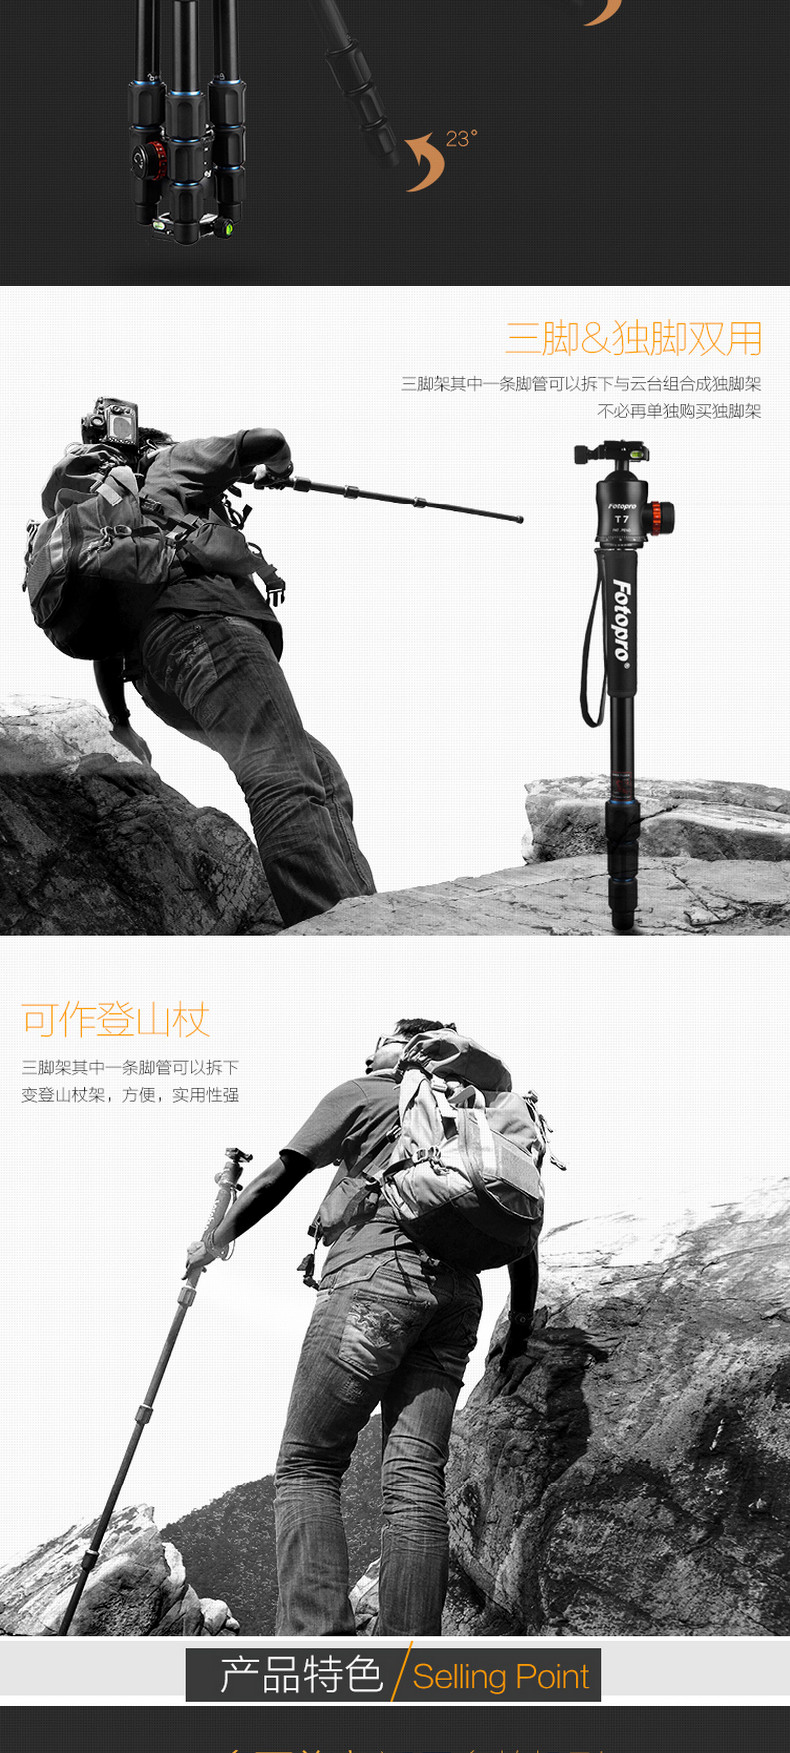 富图宝(Fotopro) MGA-684N+T7 专业相机单反相机打鸟三脚架云台套装三角架